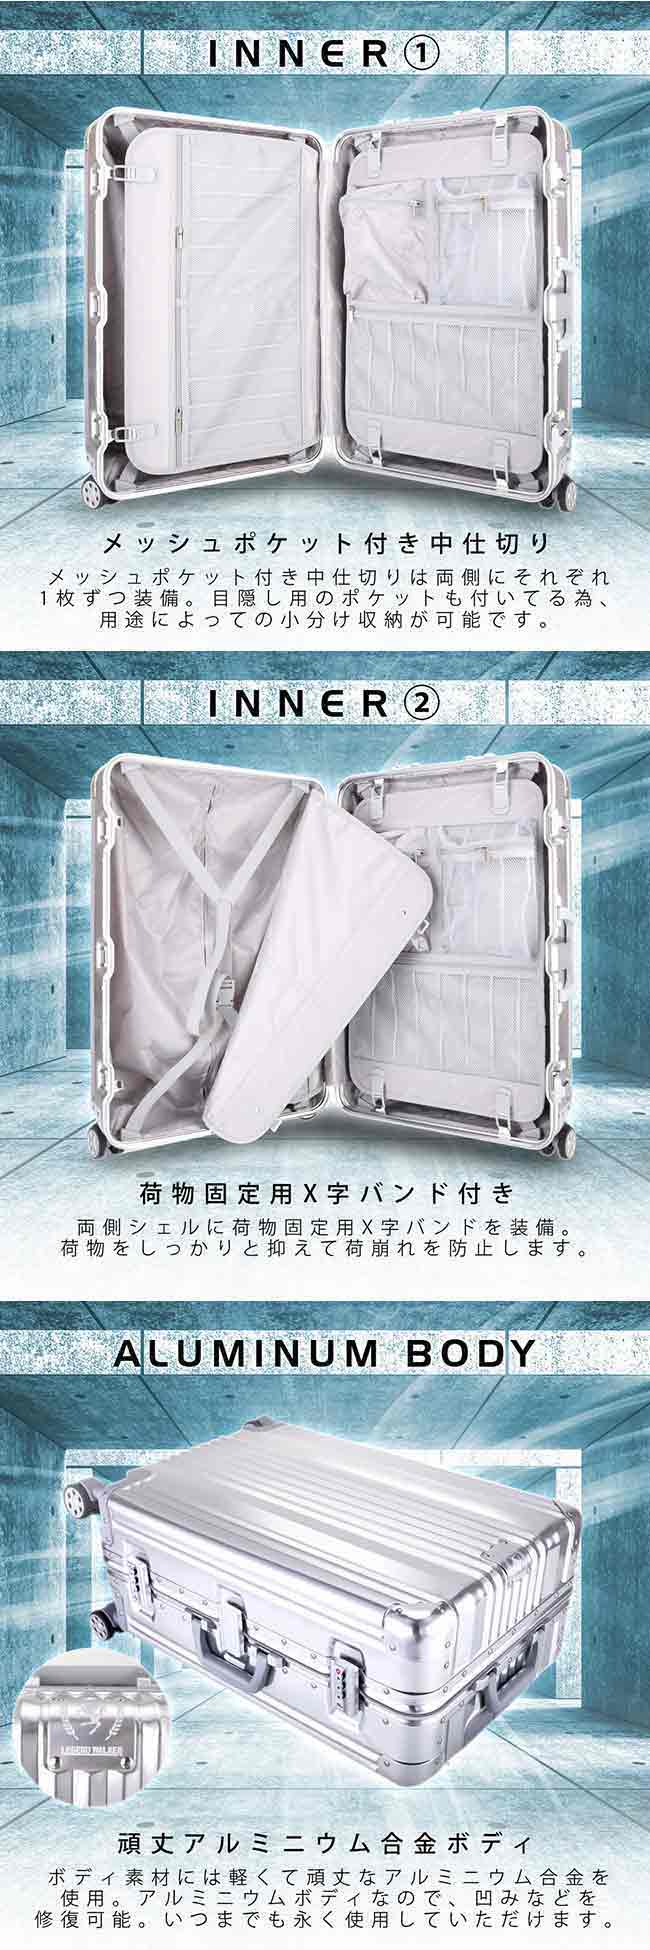 日本 LEGEND WALKER 1510-63-25吋全鋁鎂合金行李箱 合金銀